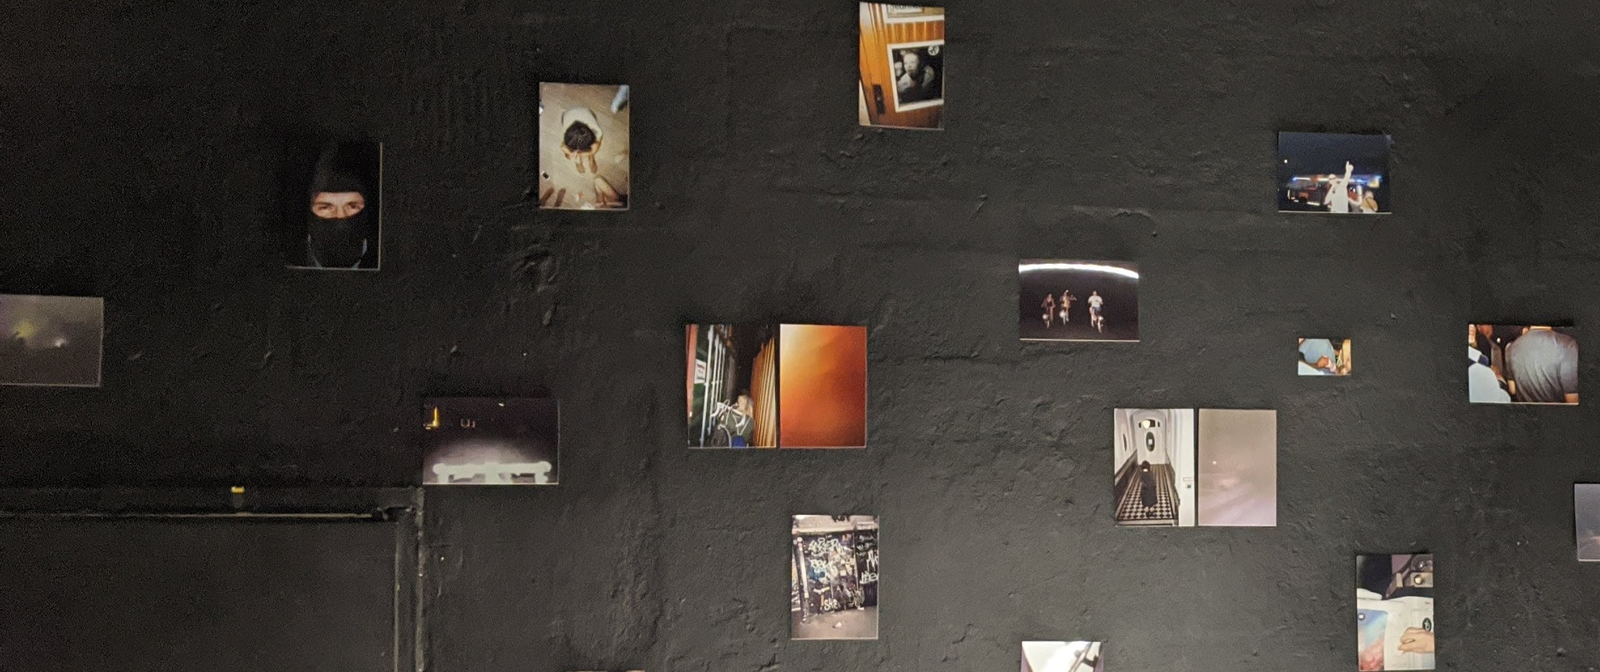 Eine schwarze Wand mit mehreren Fotografien in dunklen Tönen.